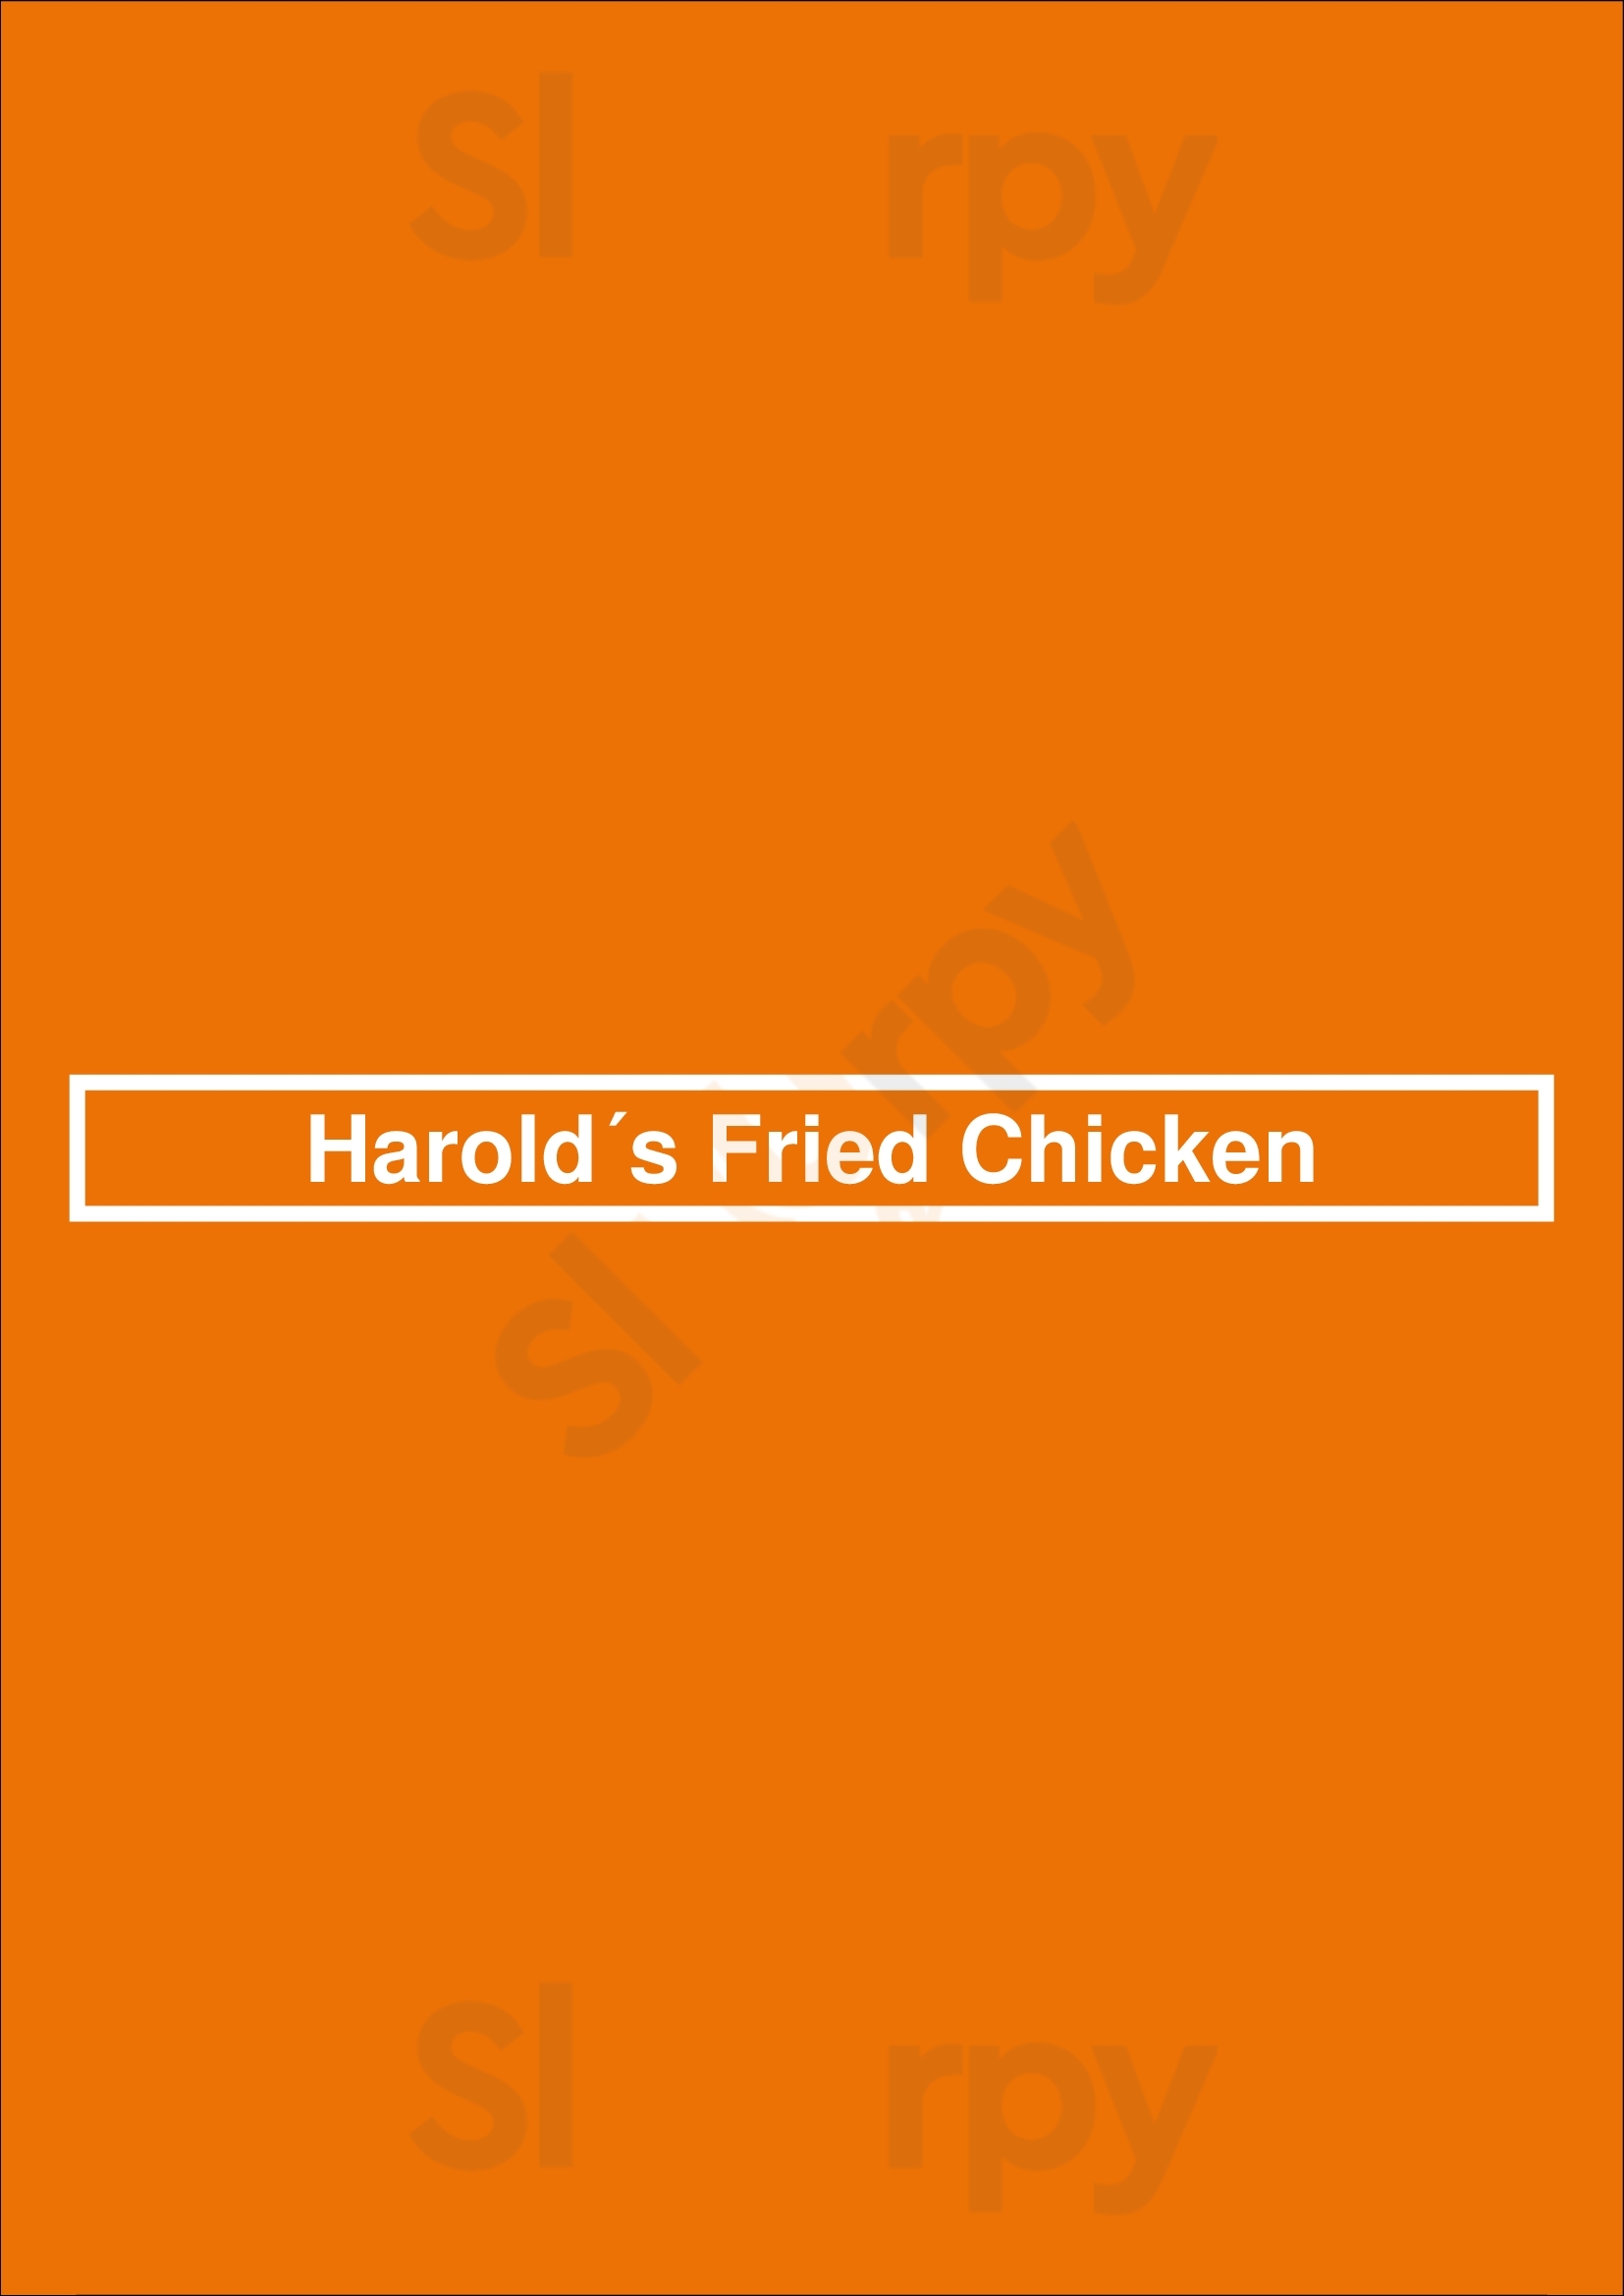 Harold´s Fried Chicken Madrid Menu - 1